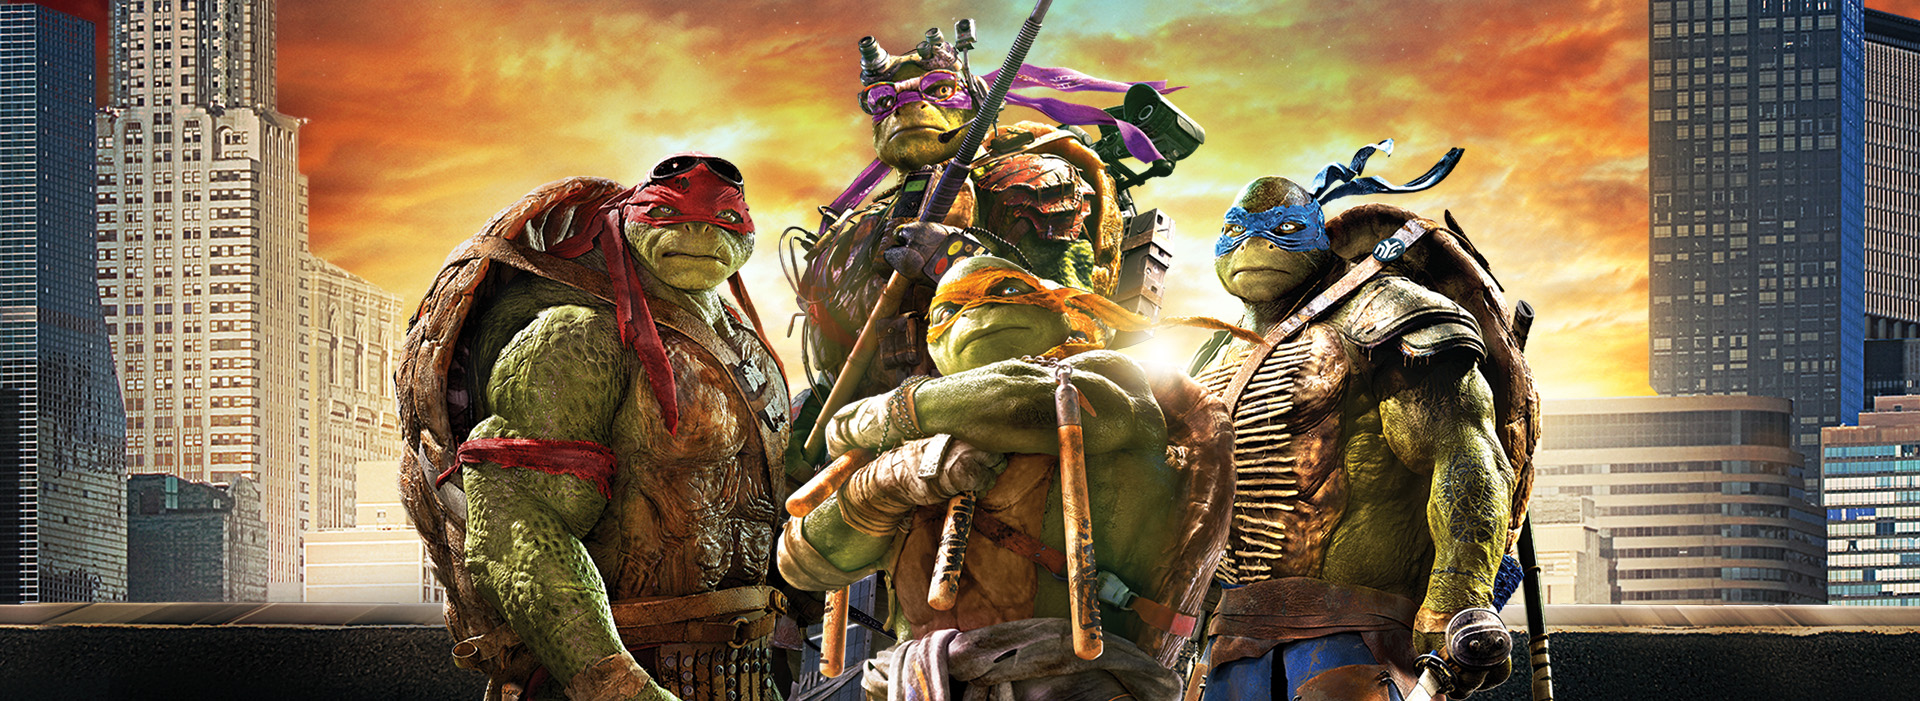 Movie poster Teenage Mutant Ninja Turtles